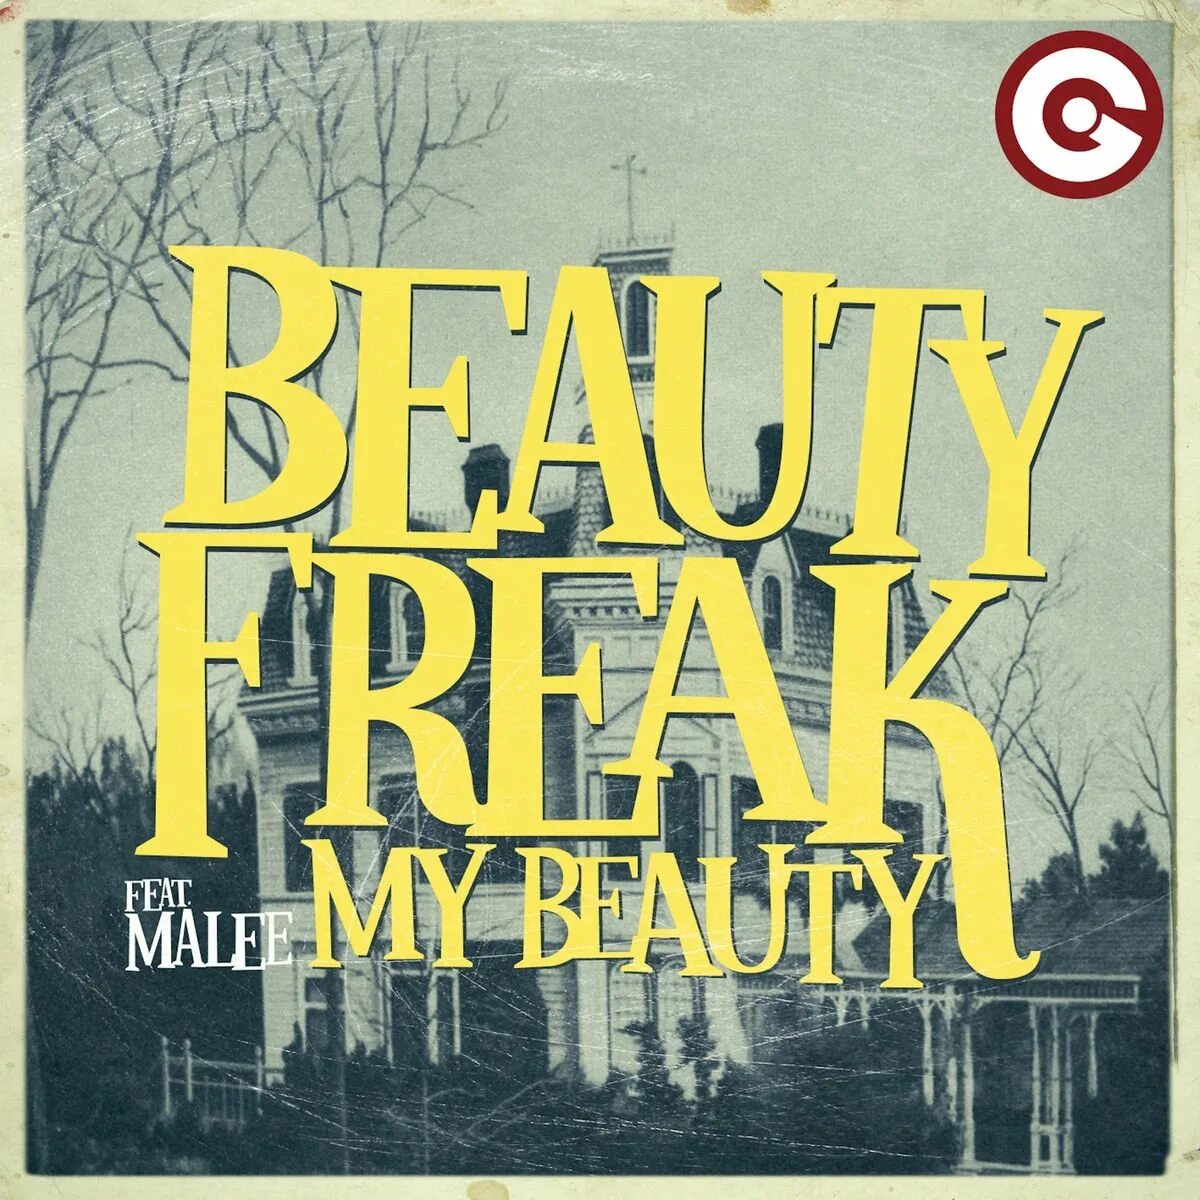 My beautiful song. Beauty Freak. Группа Beauty Freak. My Beauty Paris-Verneuil Mix  — Beauty Freak, Malee. Beauty Freak перевод.